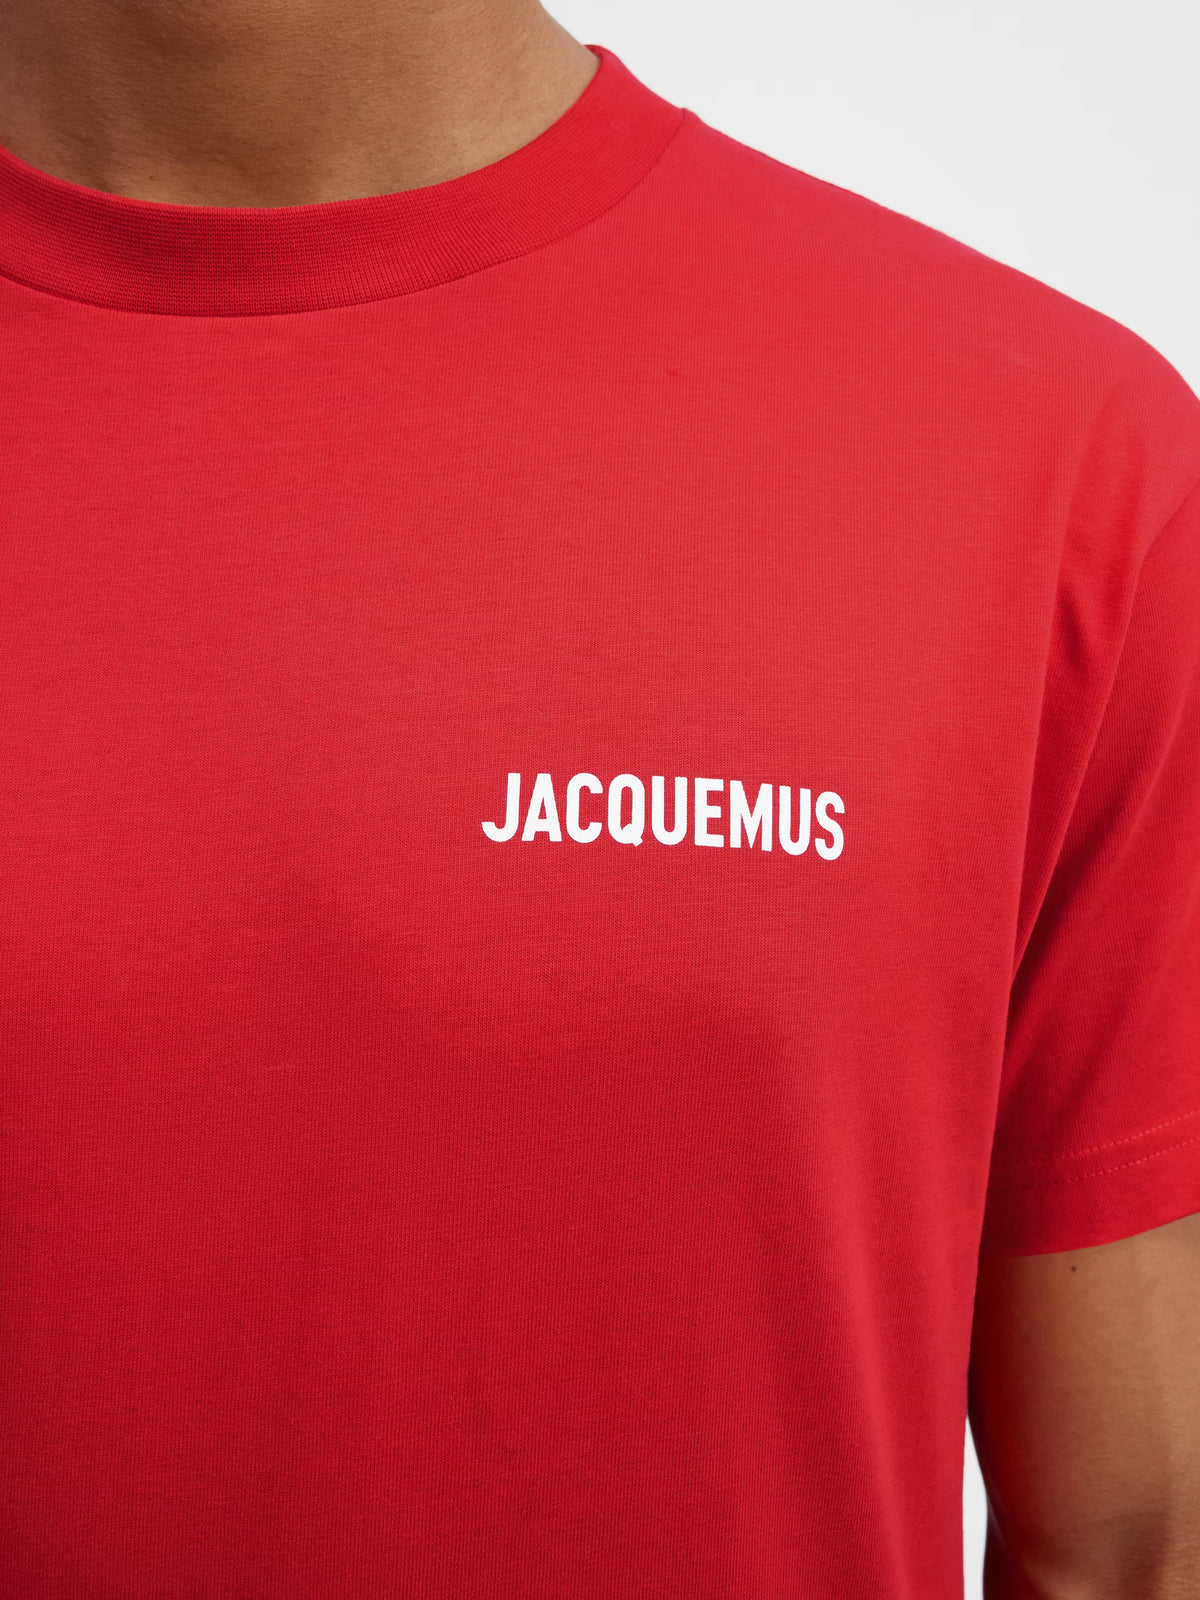 Le Tshirt Jacquemus - Red